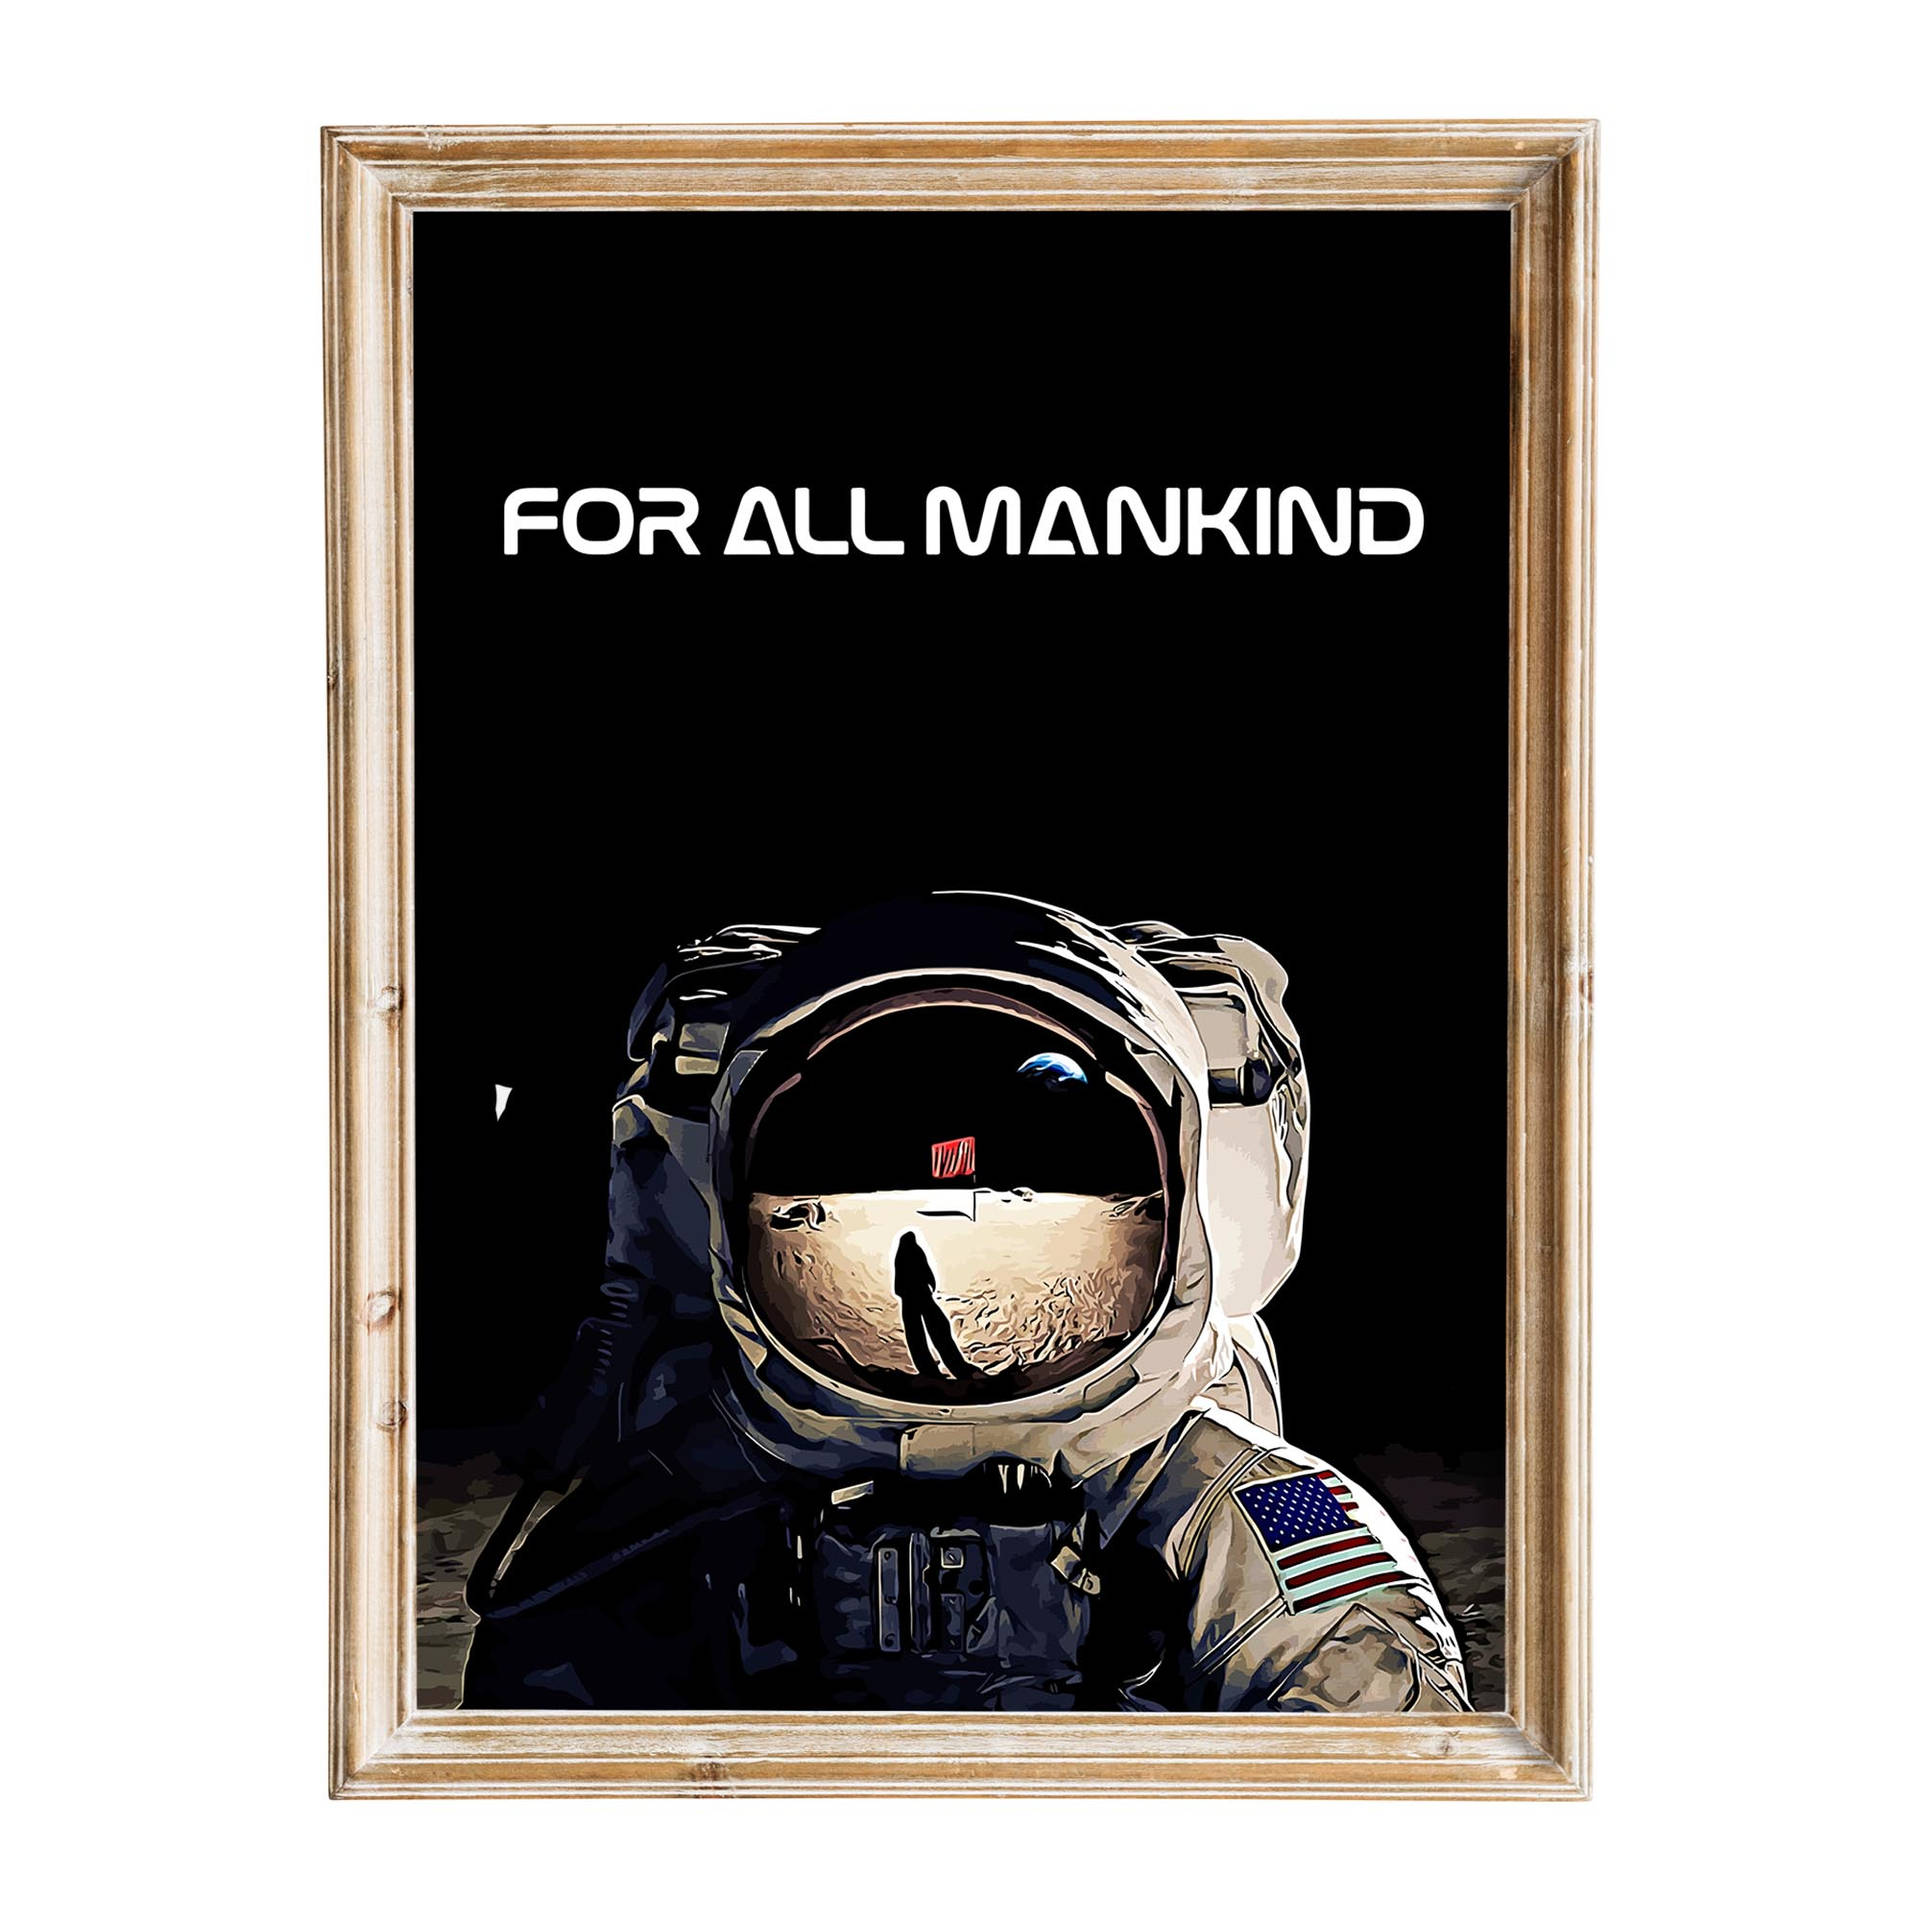 Füralle Menschen Astronauten-rahmen Wallpaper